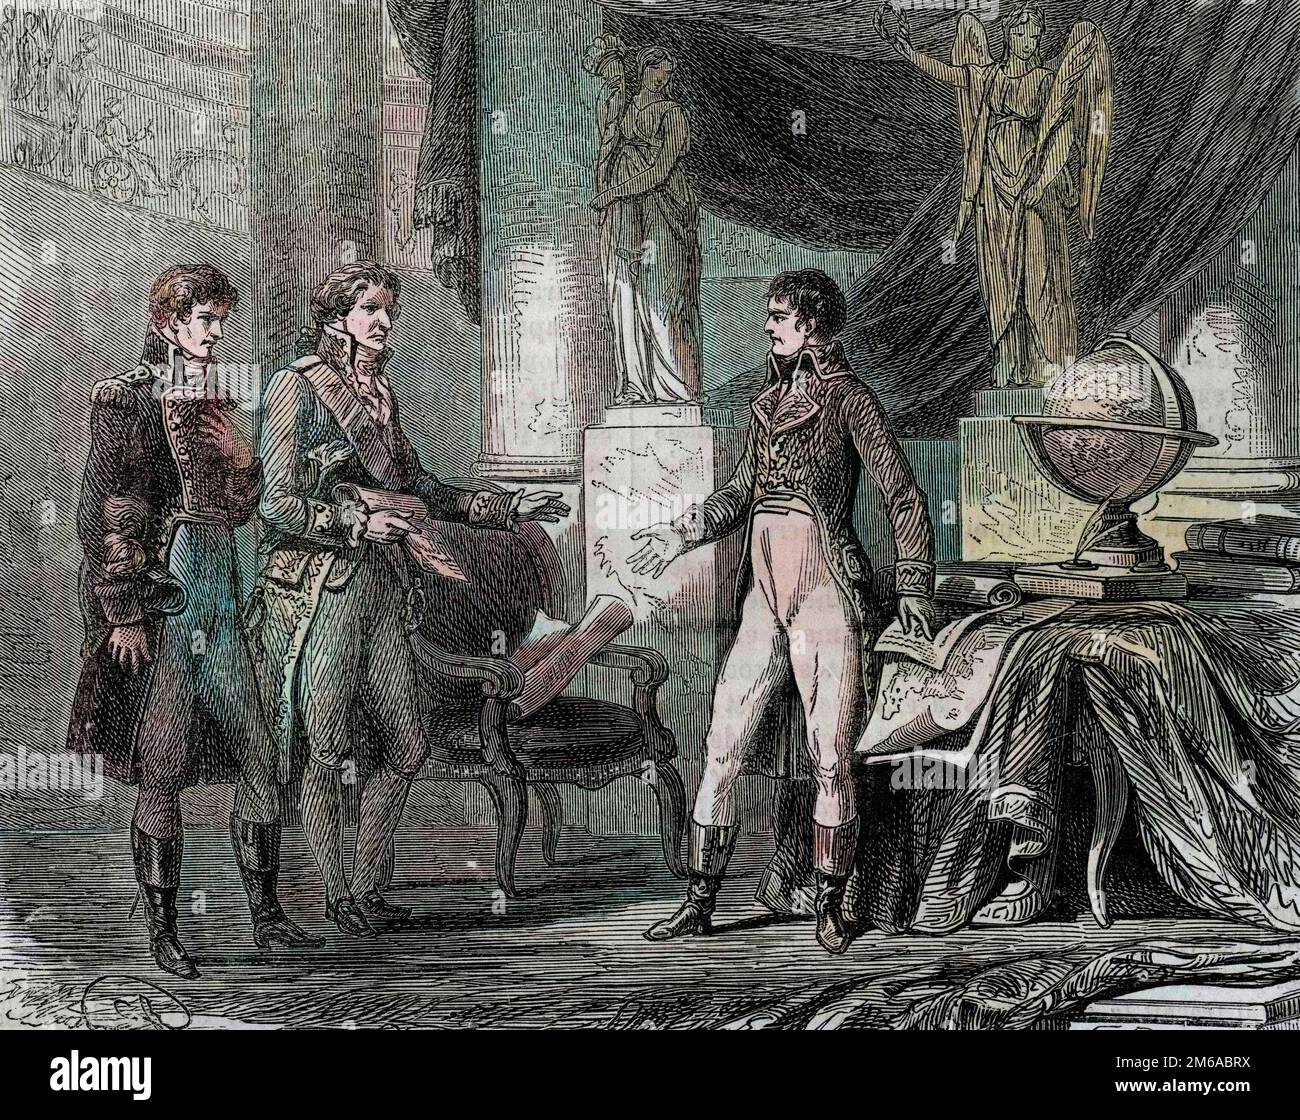 Lord Cornwallis (1738-1805) verhandelt den Vertrag von Amiens (1802) mit Napoleon Bonaparte (1769-1821) - Frieden von Amiens, Frankreich - Vertrag unterzeichnet im März 1802, der die Revolutionskriege 1791-1802 zwischen Frankreich und Großbritannien, Österreich, Preußen und anderen Kontinentalmächten beendete - eingraviert aus " Histoire populaire de la France" 1866 Stockfoto